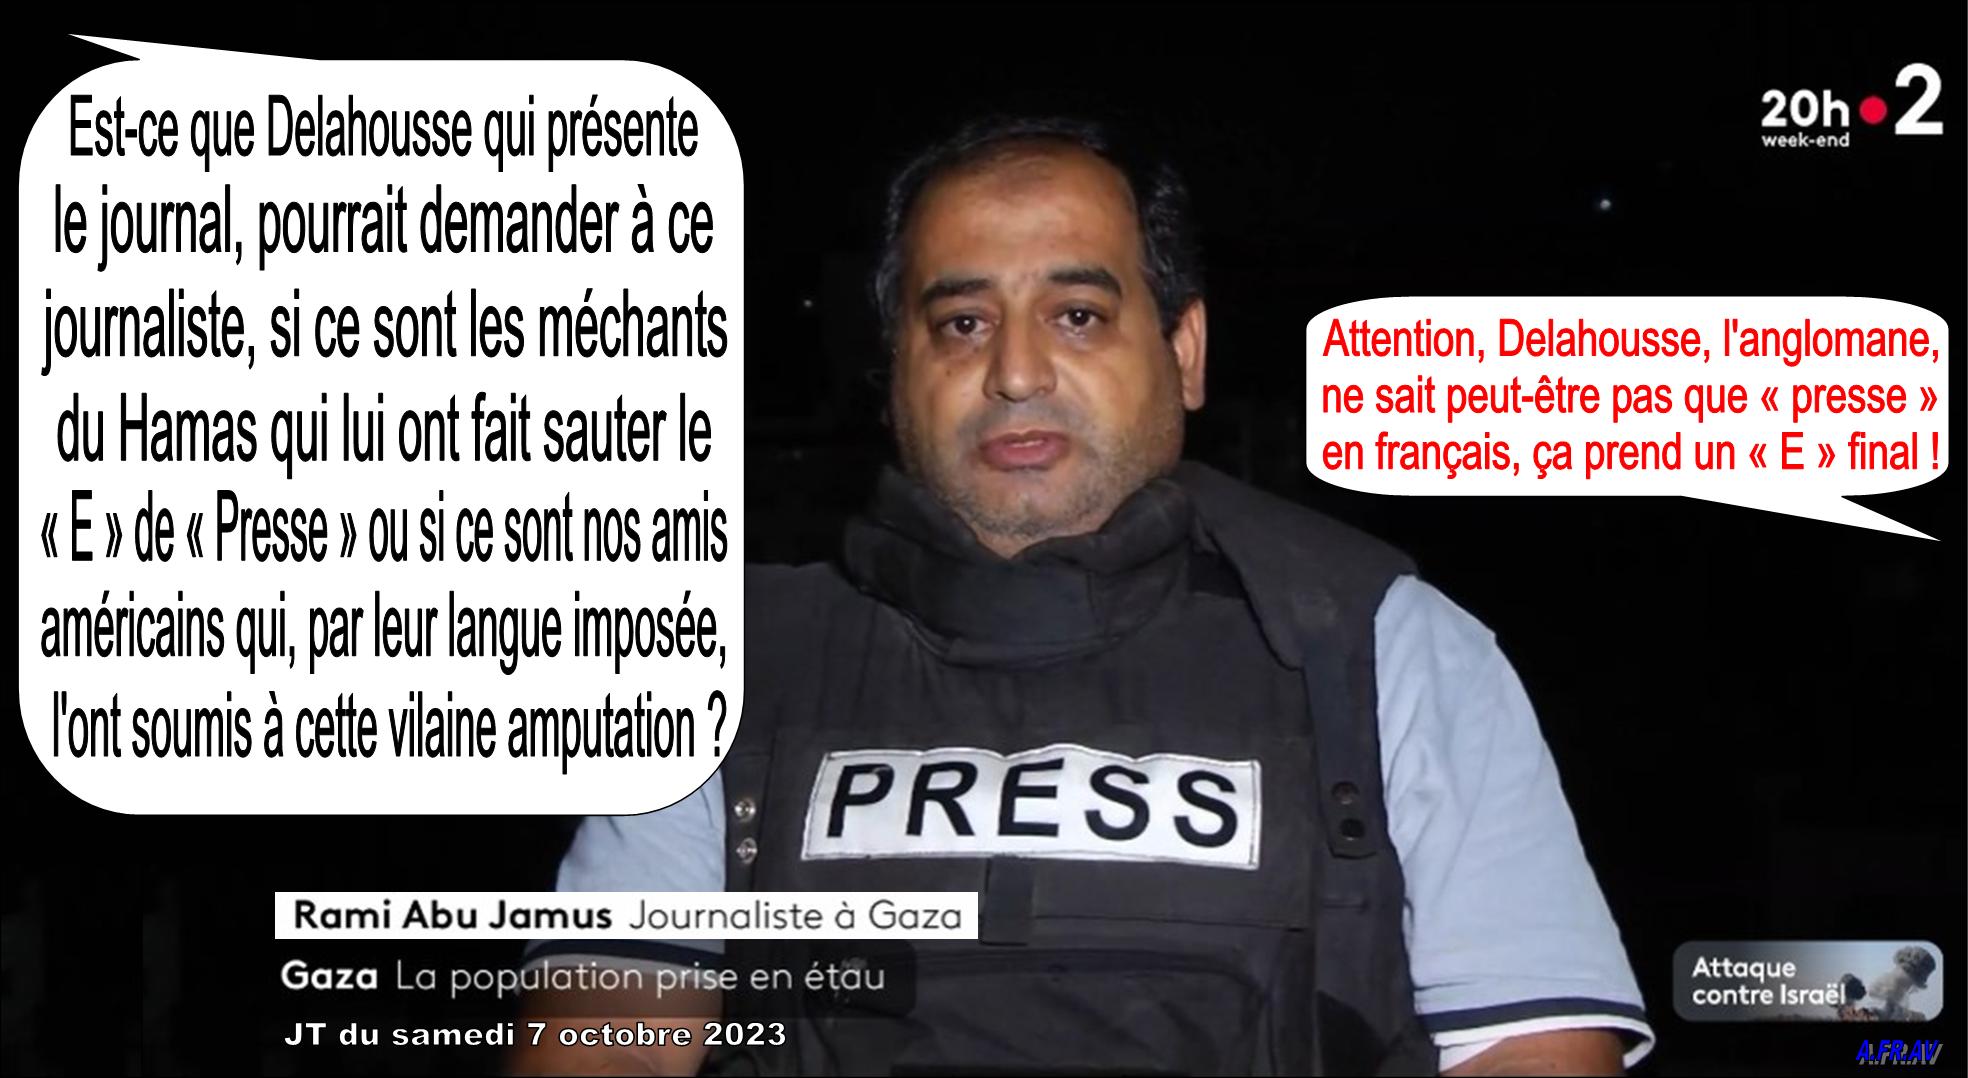 Rami Abu Jamus, journaliste à Gaza en Palestine et Laurent Delahousse anglomane au JT de 20h de France 2